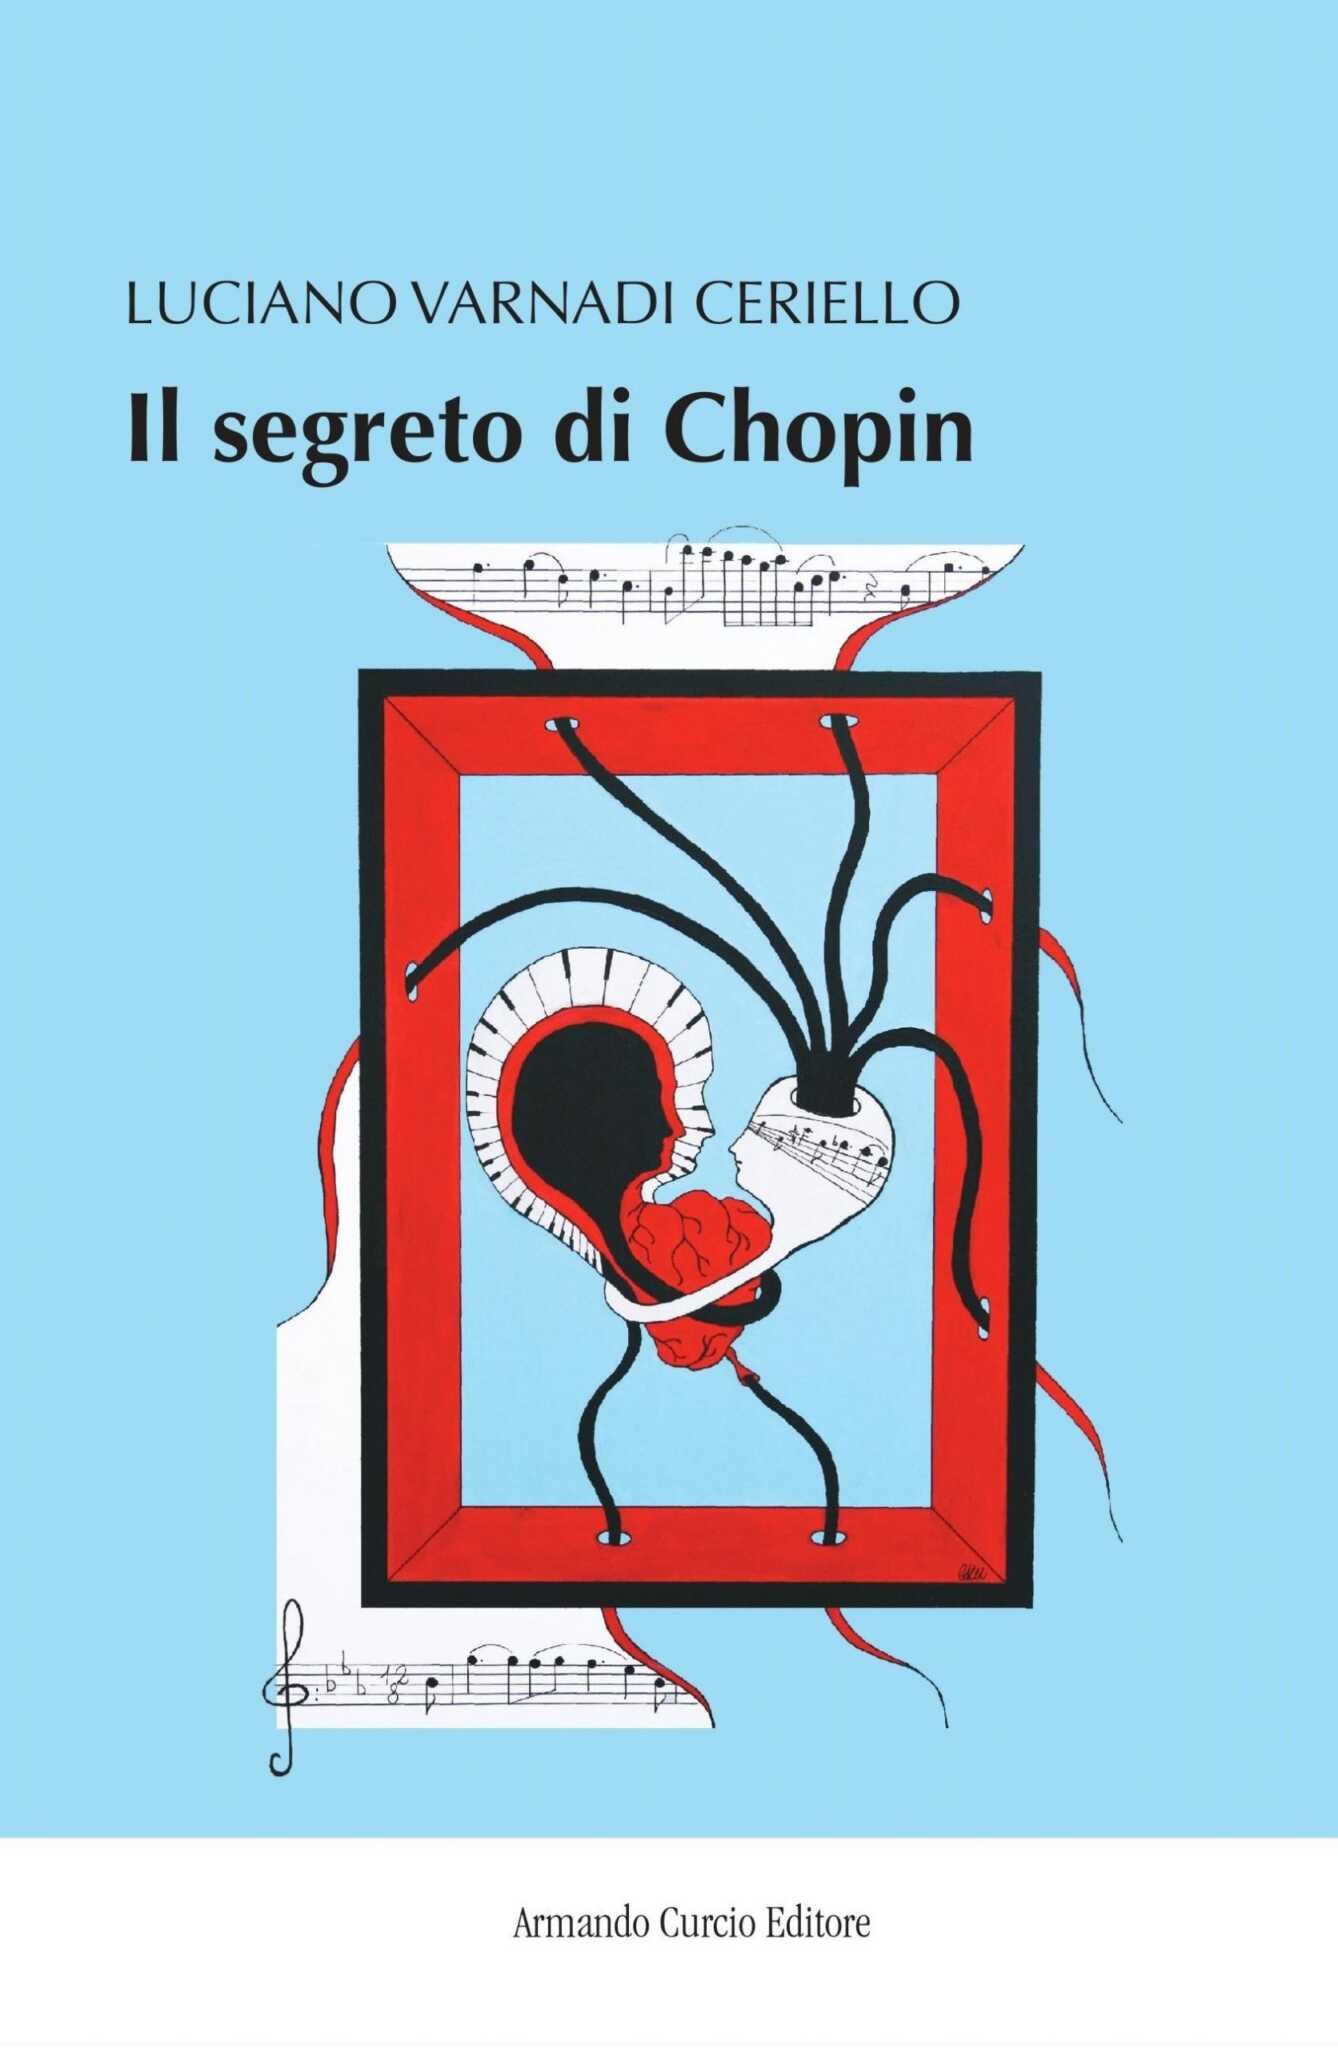 Weekend intenso per lo scrittore cantautore Luciano Varnadi Ceriello e per il suo romanzo ‘Il segreto di Chopin’.